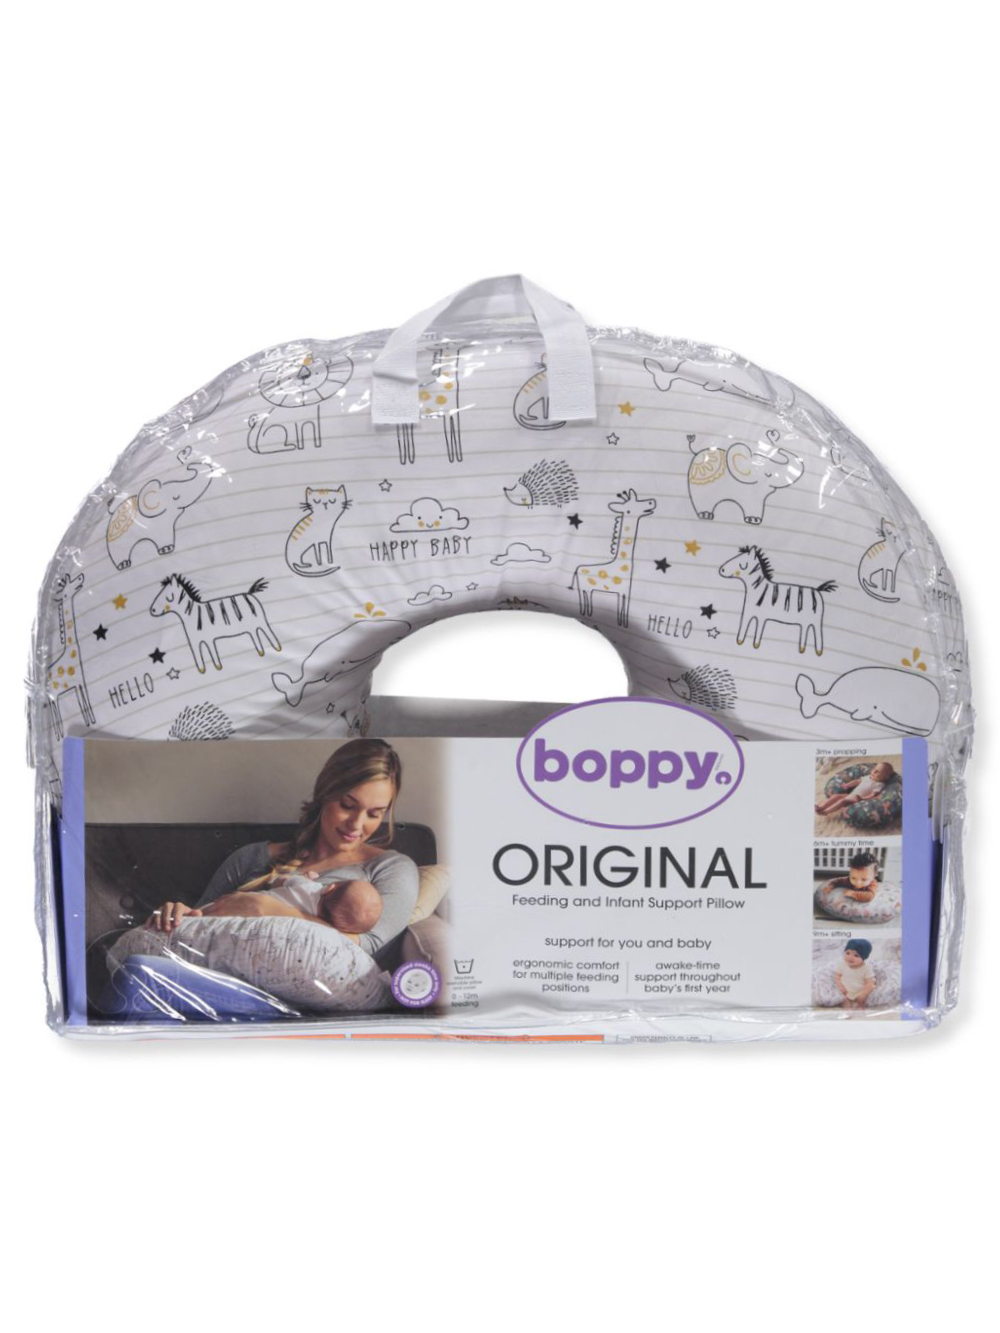 Boppy Original Feeding & Infant Support Pillow